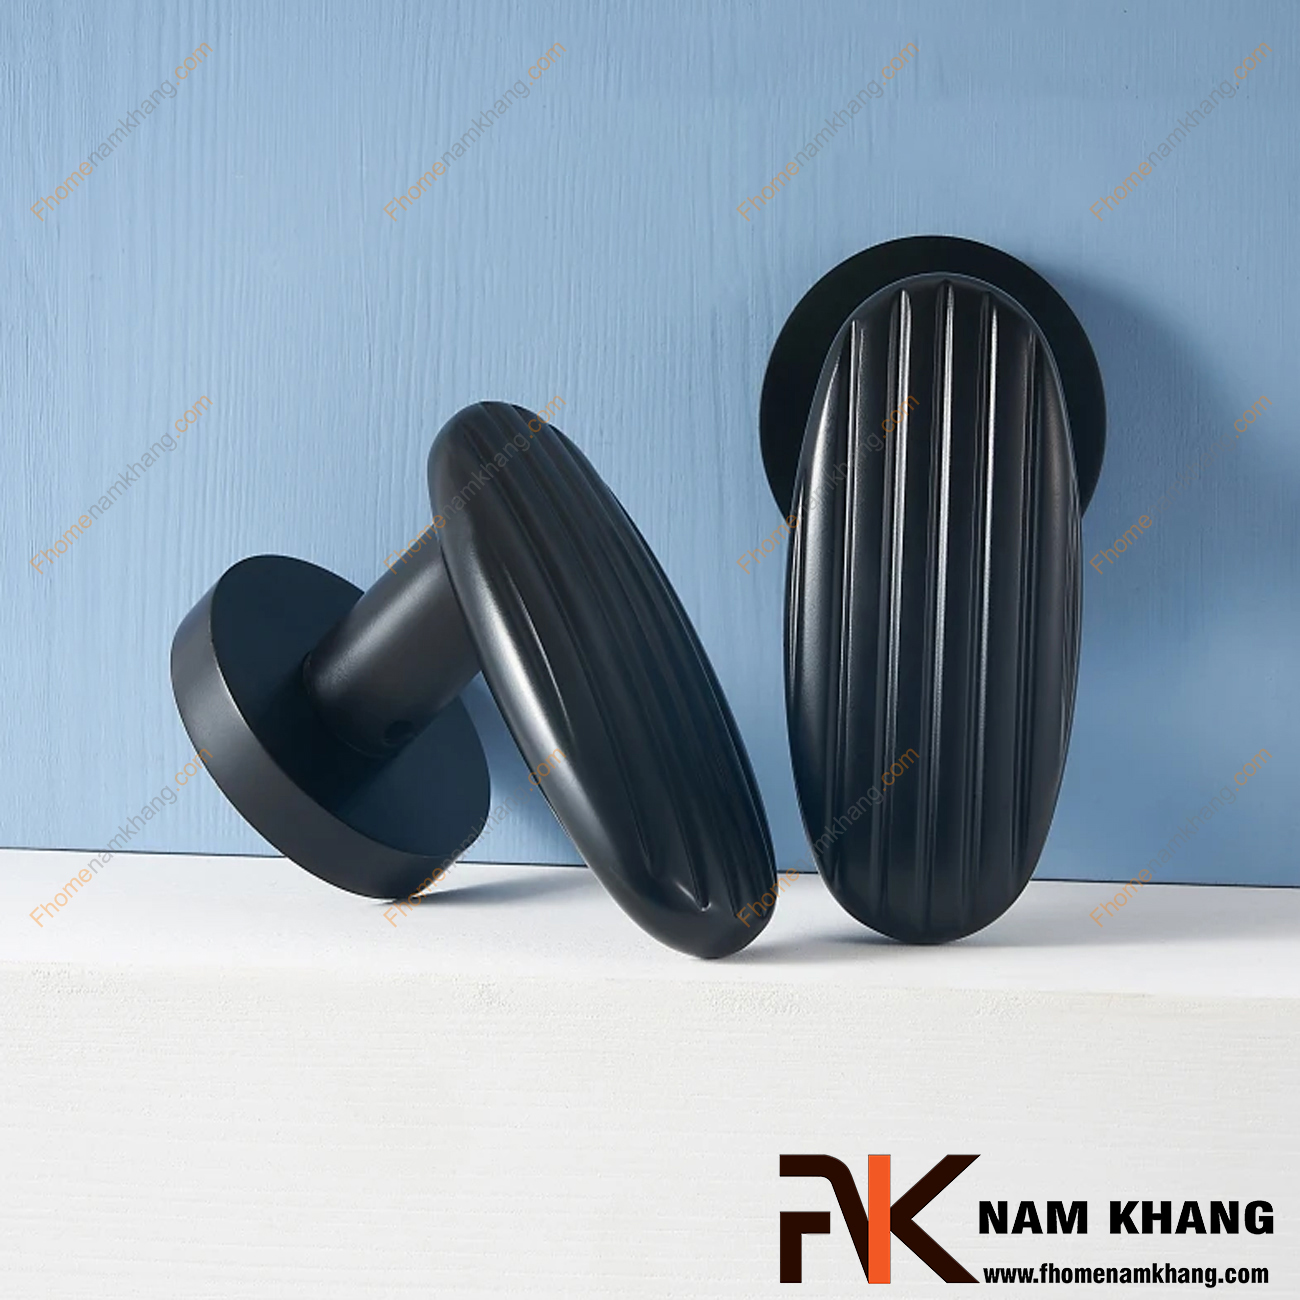 Khóa cửa phân thể hiện đại hoạt động bằng nam châm màu đen NK578-DM có thiết kế cách điệu, đường nét mềm mại, mang giá trị thẩm mĩ cao.